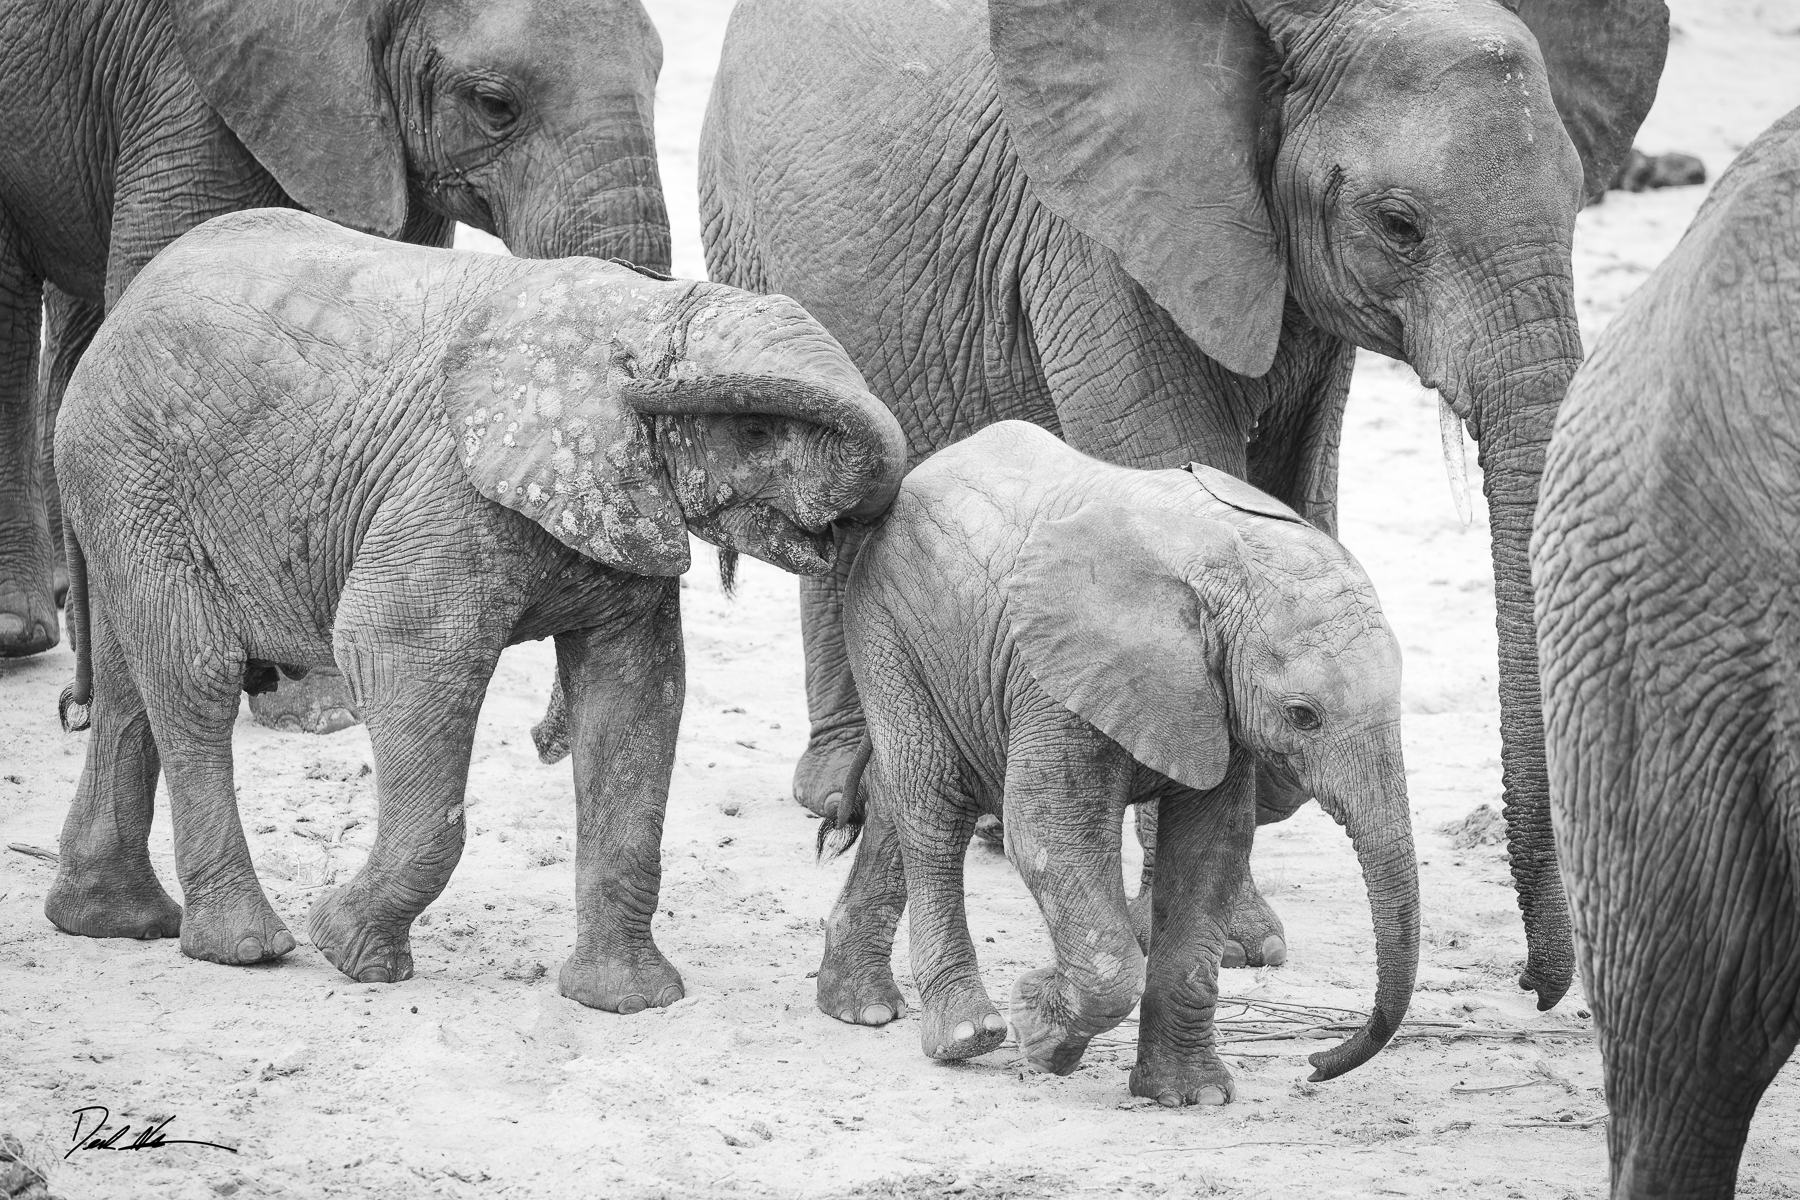 Elephant family in Tanzania